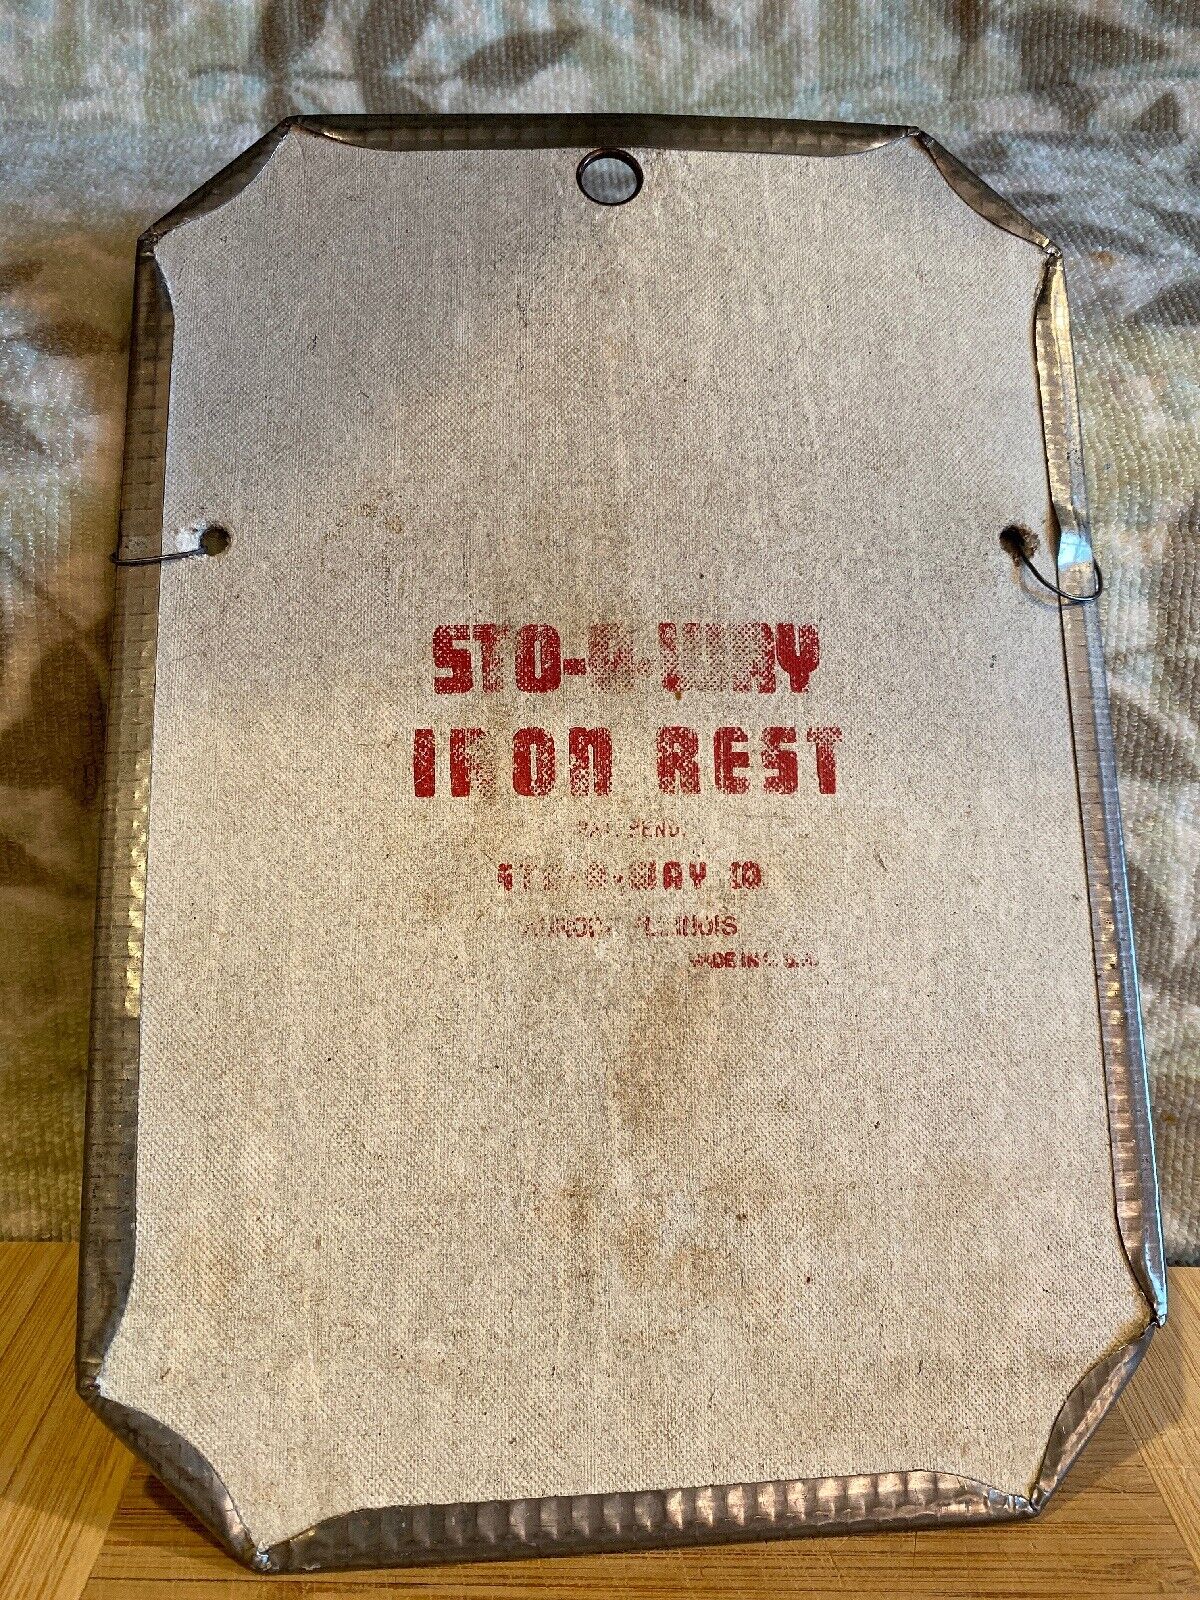 Vintage STO-A-WAY Iron Rest Sto-A-Way Co. AURORA ILLINOIS 10\